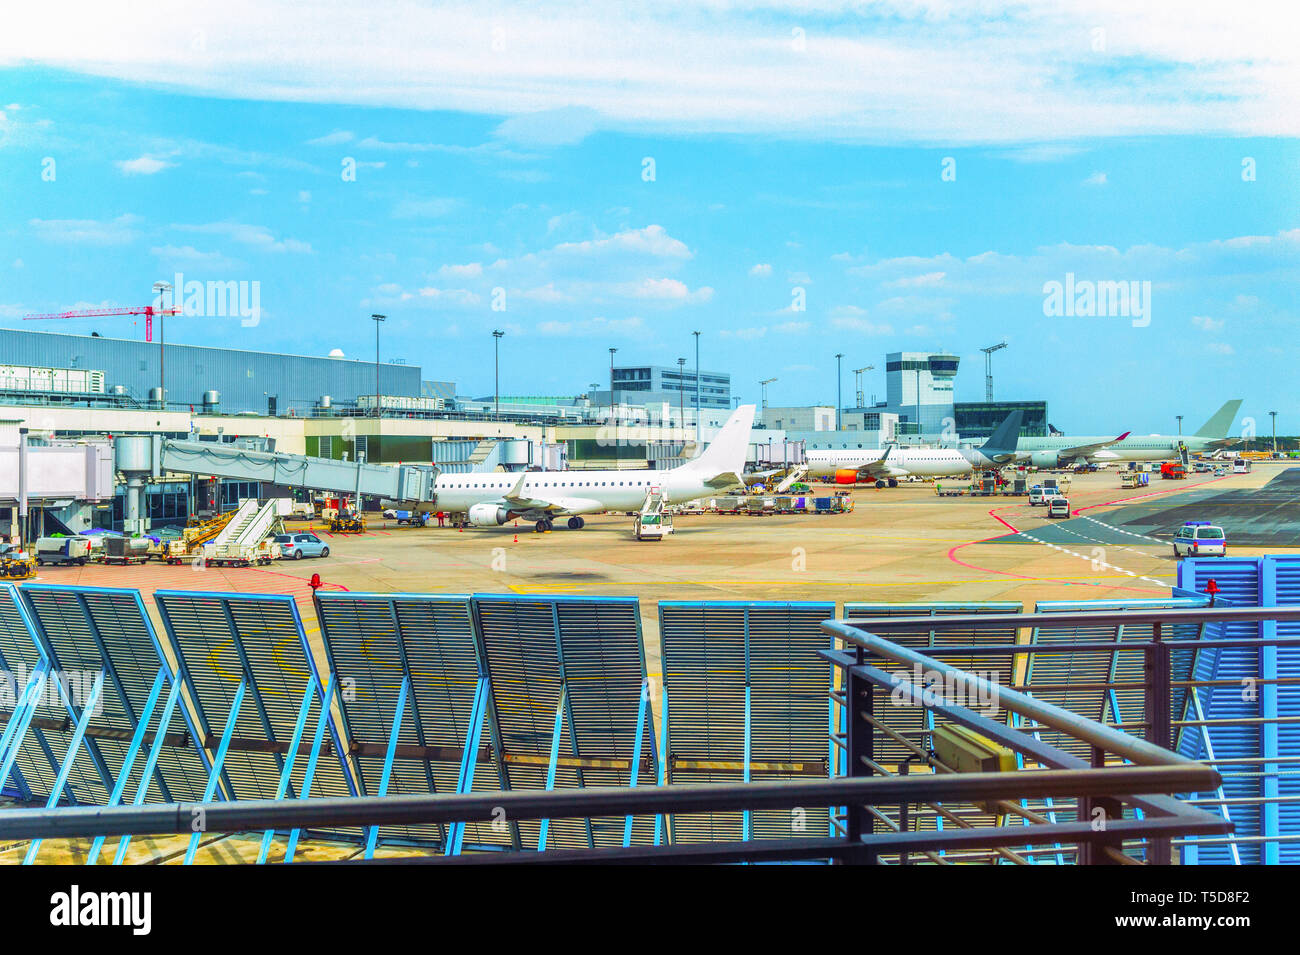 Aeródromo de Frankfurt Airport, aviones, coches de servicio, pasarelas, Germnay Foto de stock